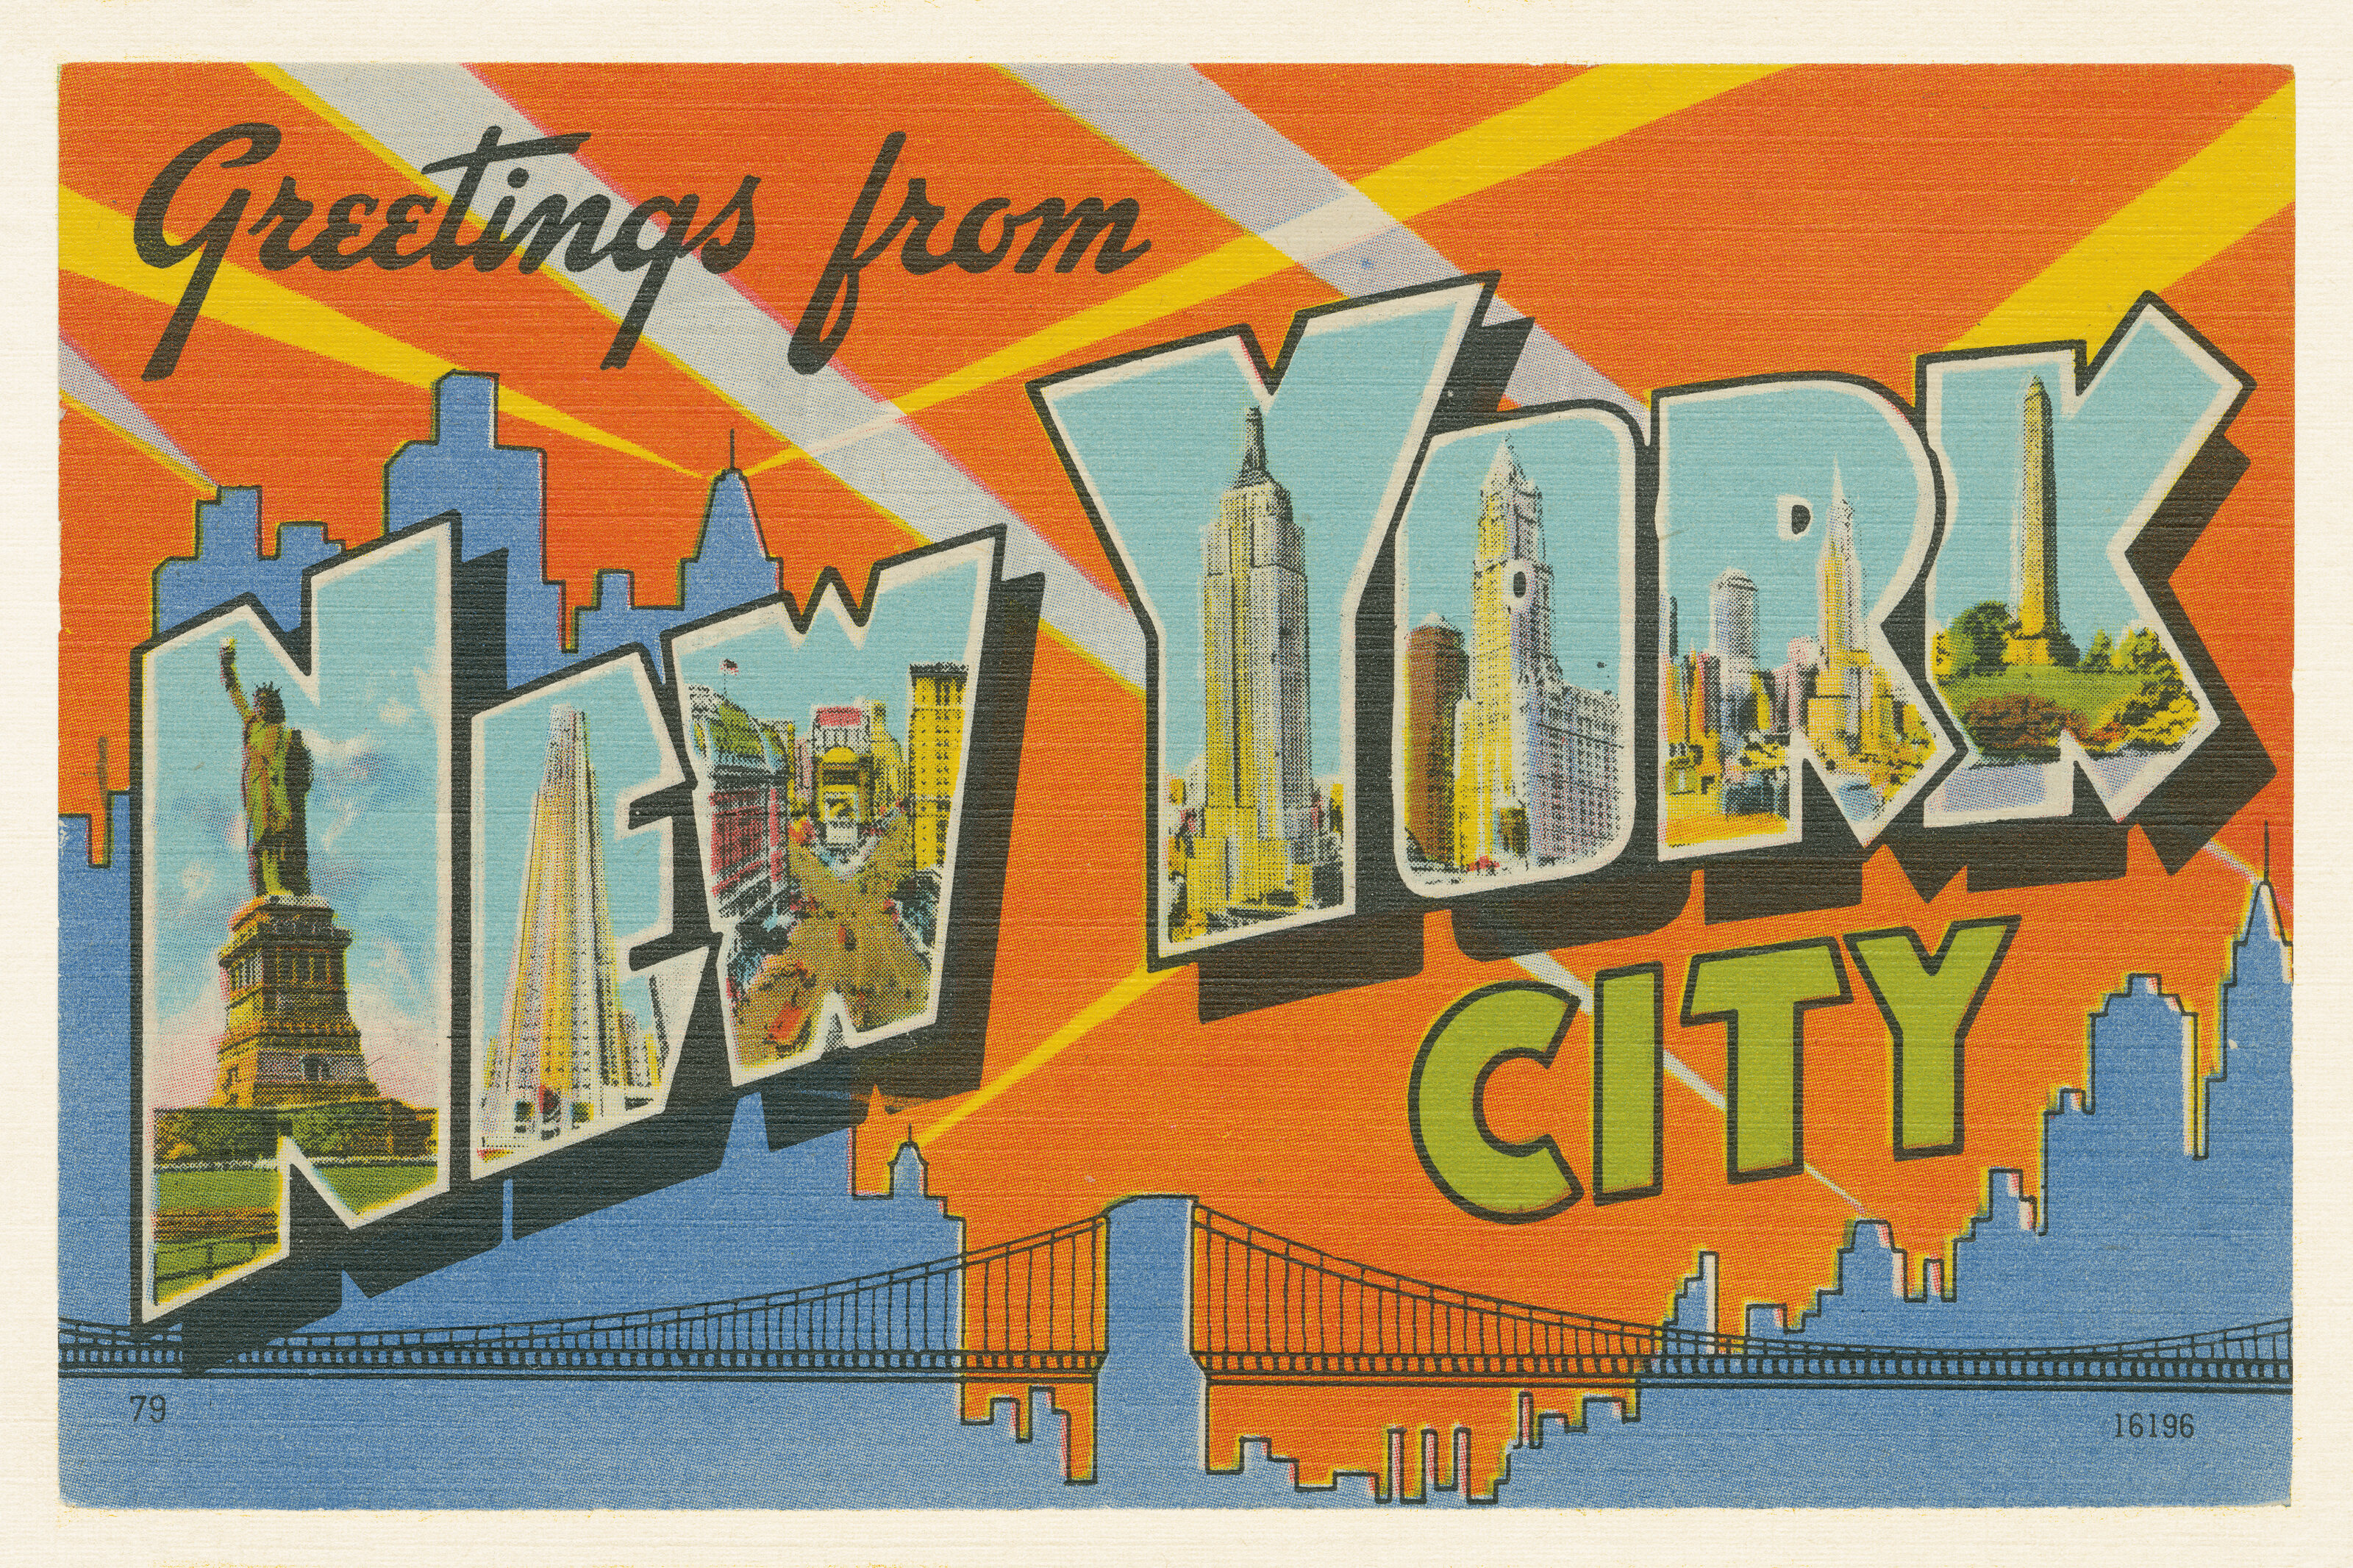 Hey mike greetings. Нью Йорк надпись. Винтажные плакаты городов. Открытка из Нью Йорка. Красивая надпись Нью Йорк.